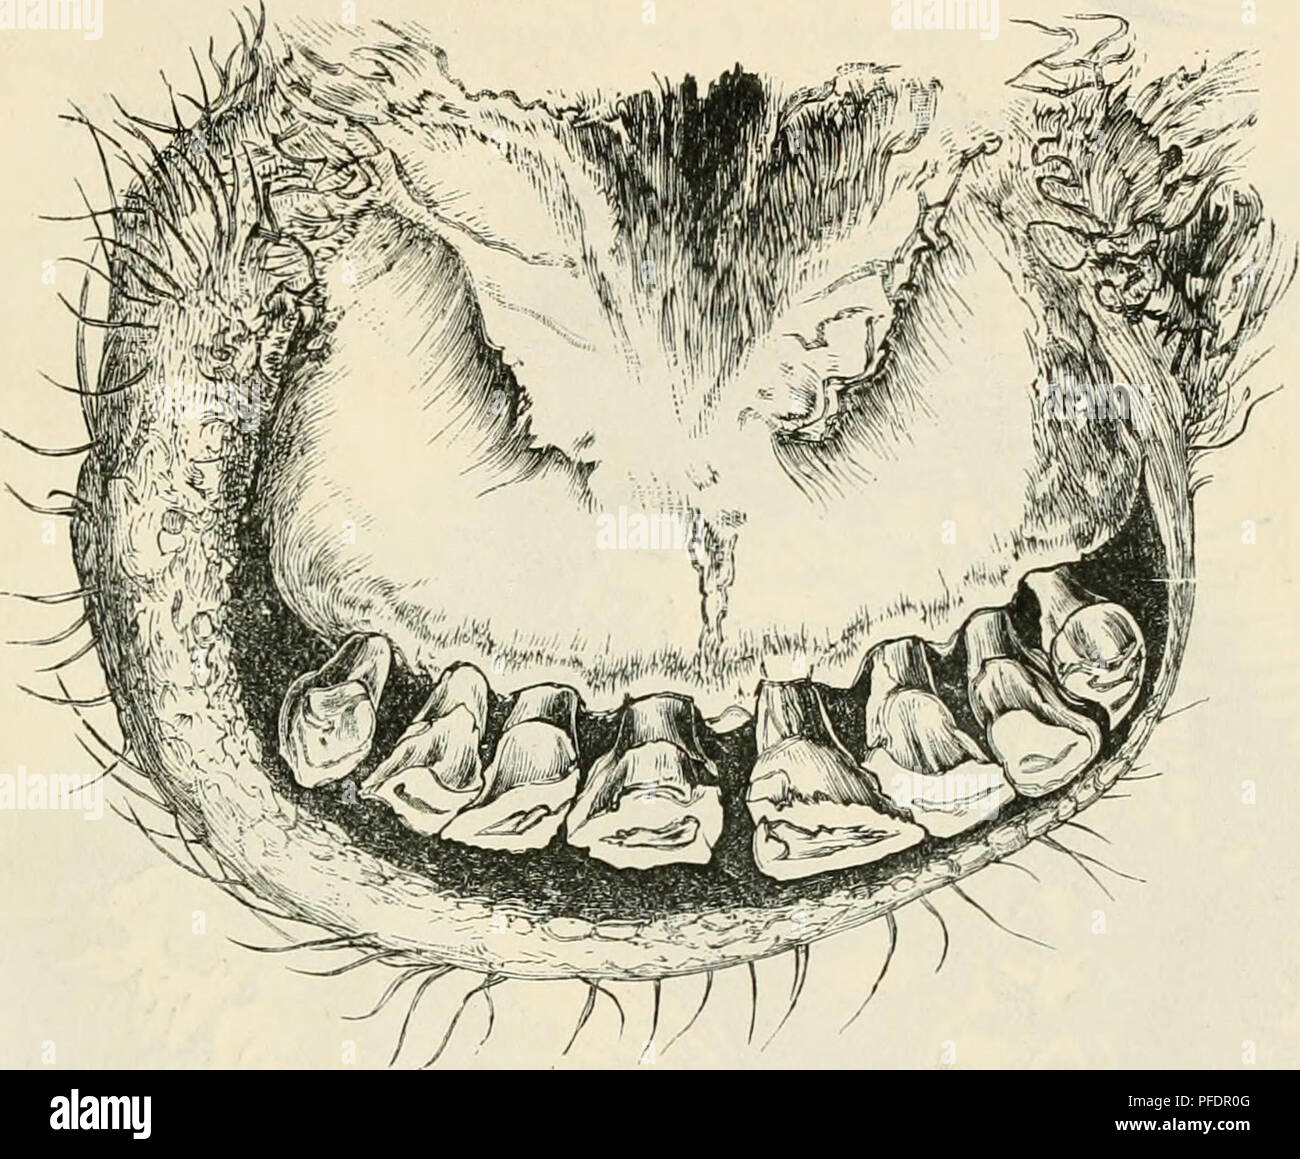 Mit 30 dritten zähne die Zahnprothesen: Dritte